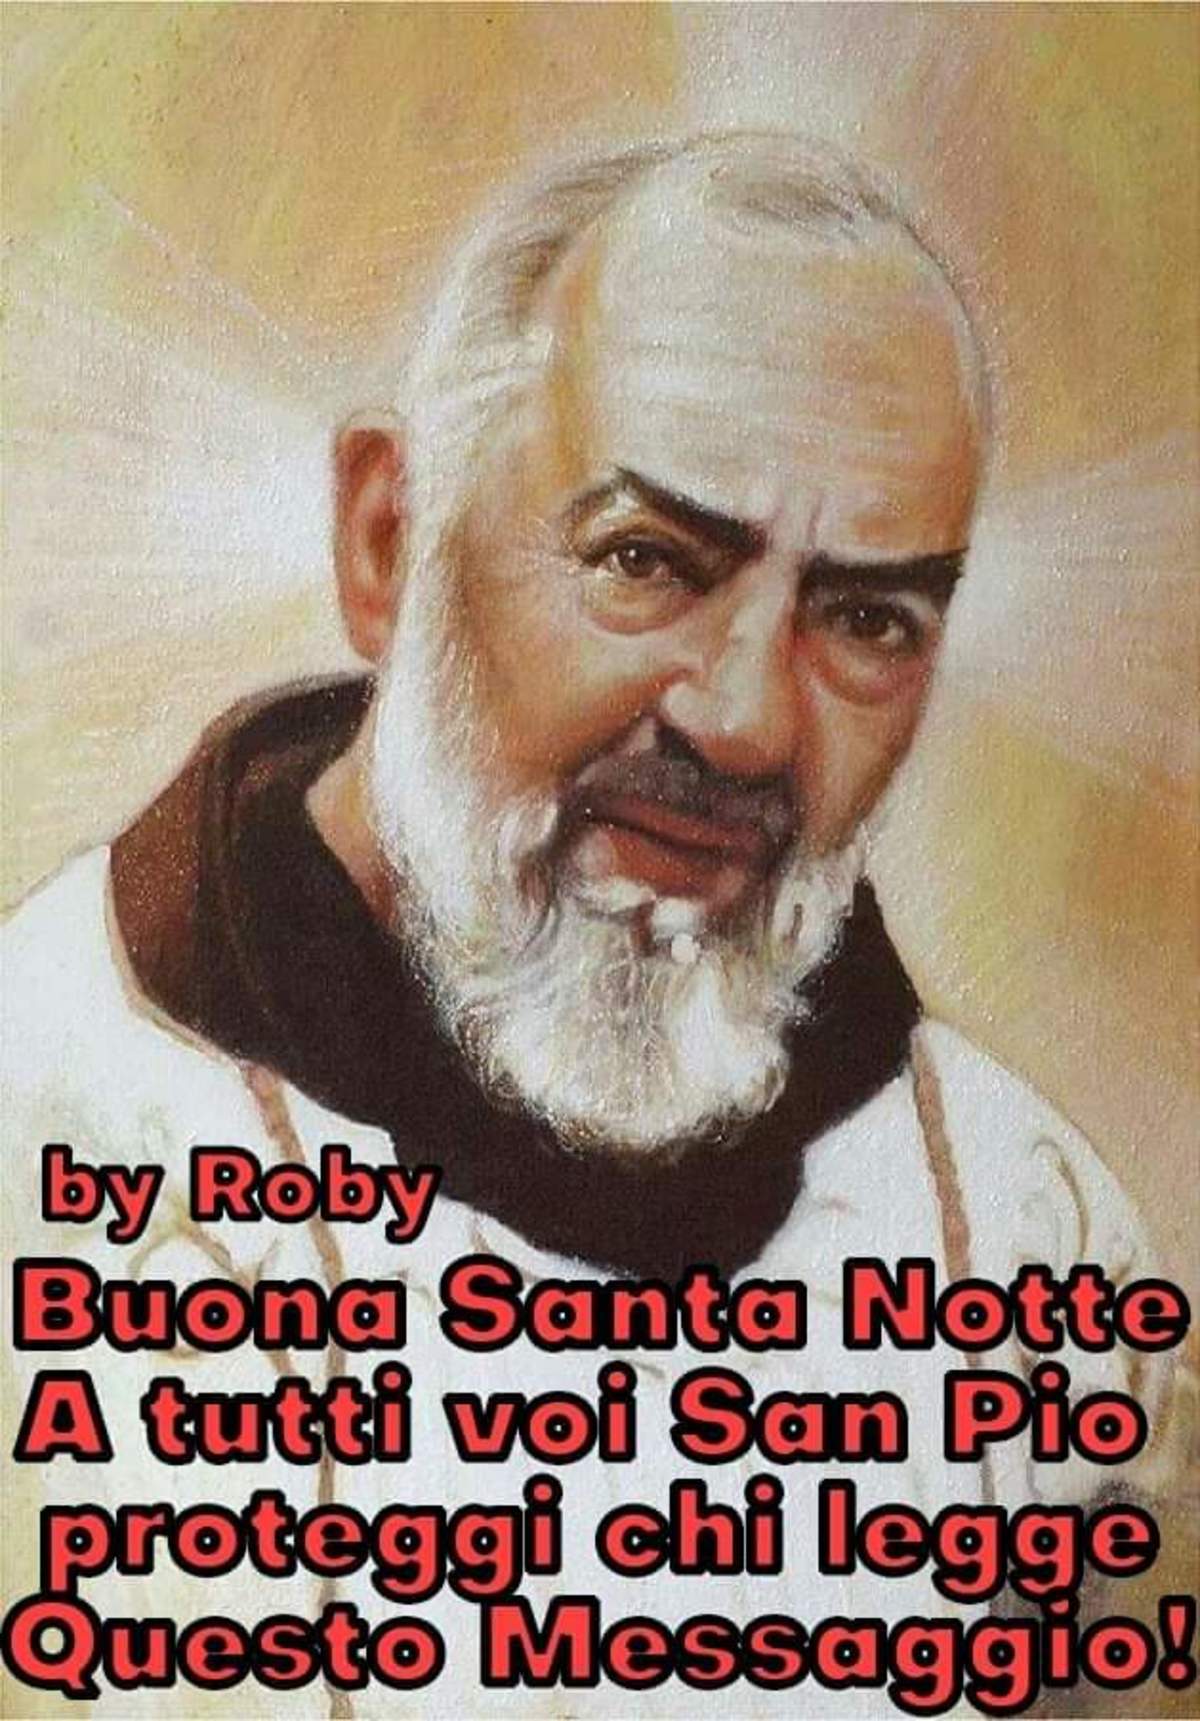 Buona Santa Notte a tutti con Padre Pio